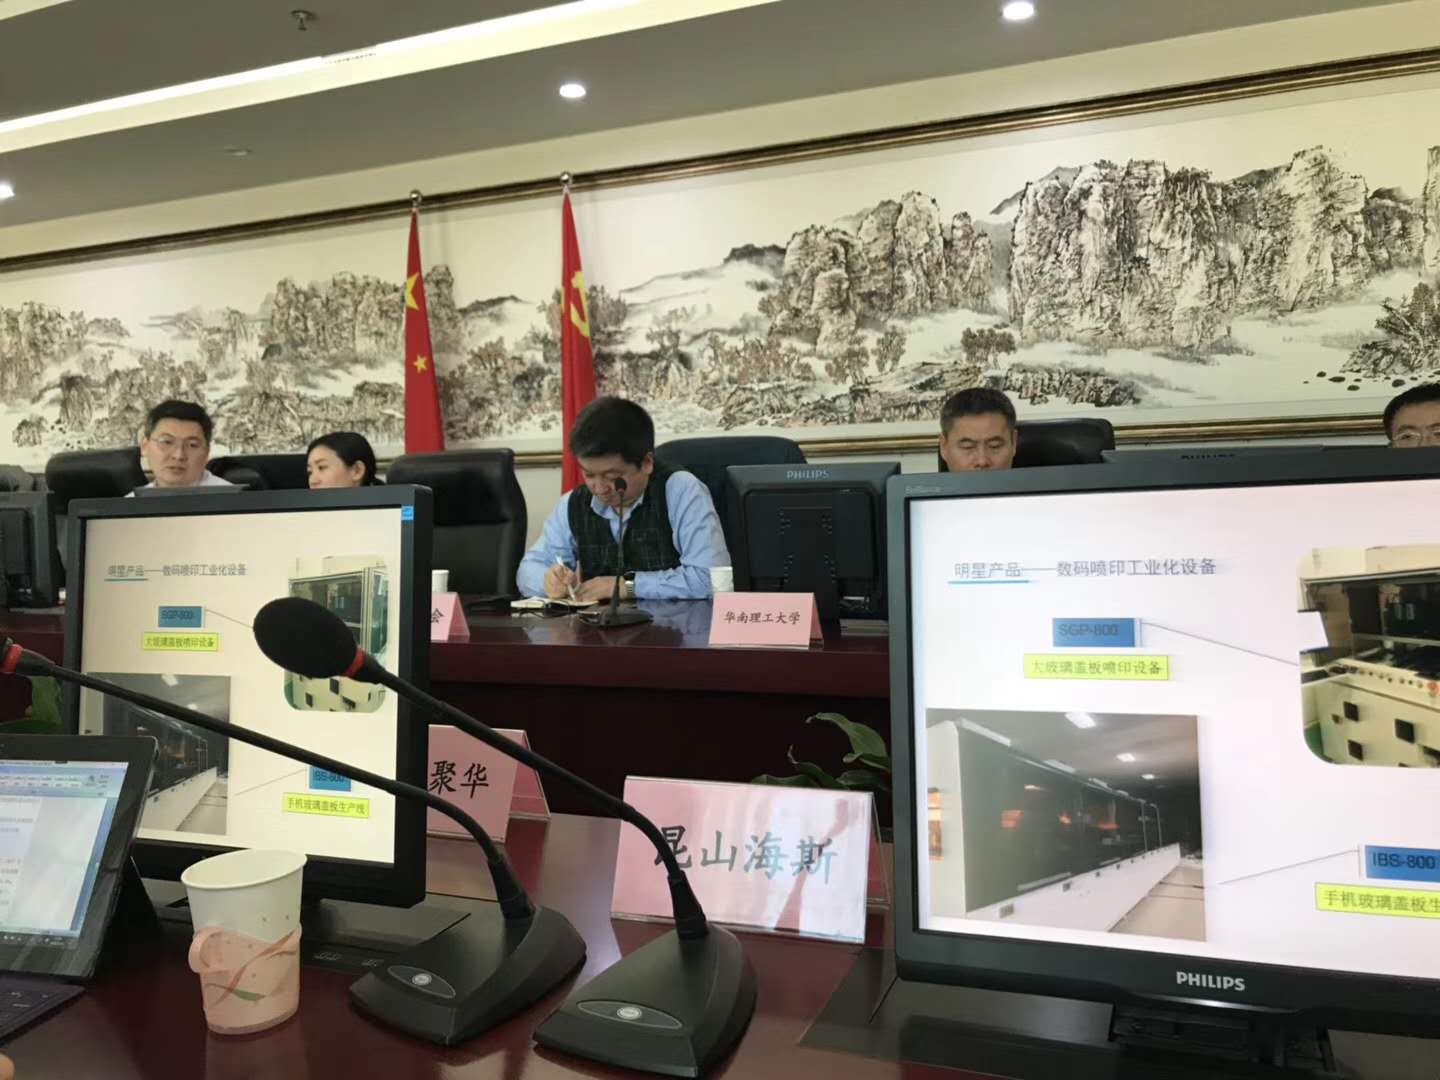 <b>海斯電子出席在北京召開的印刷顯示技術座談會</b>